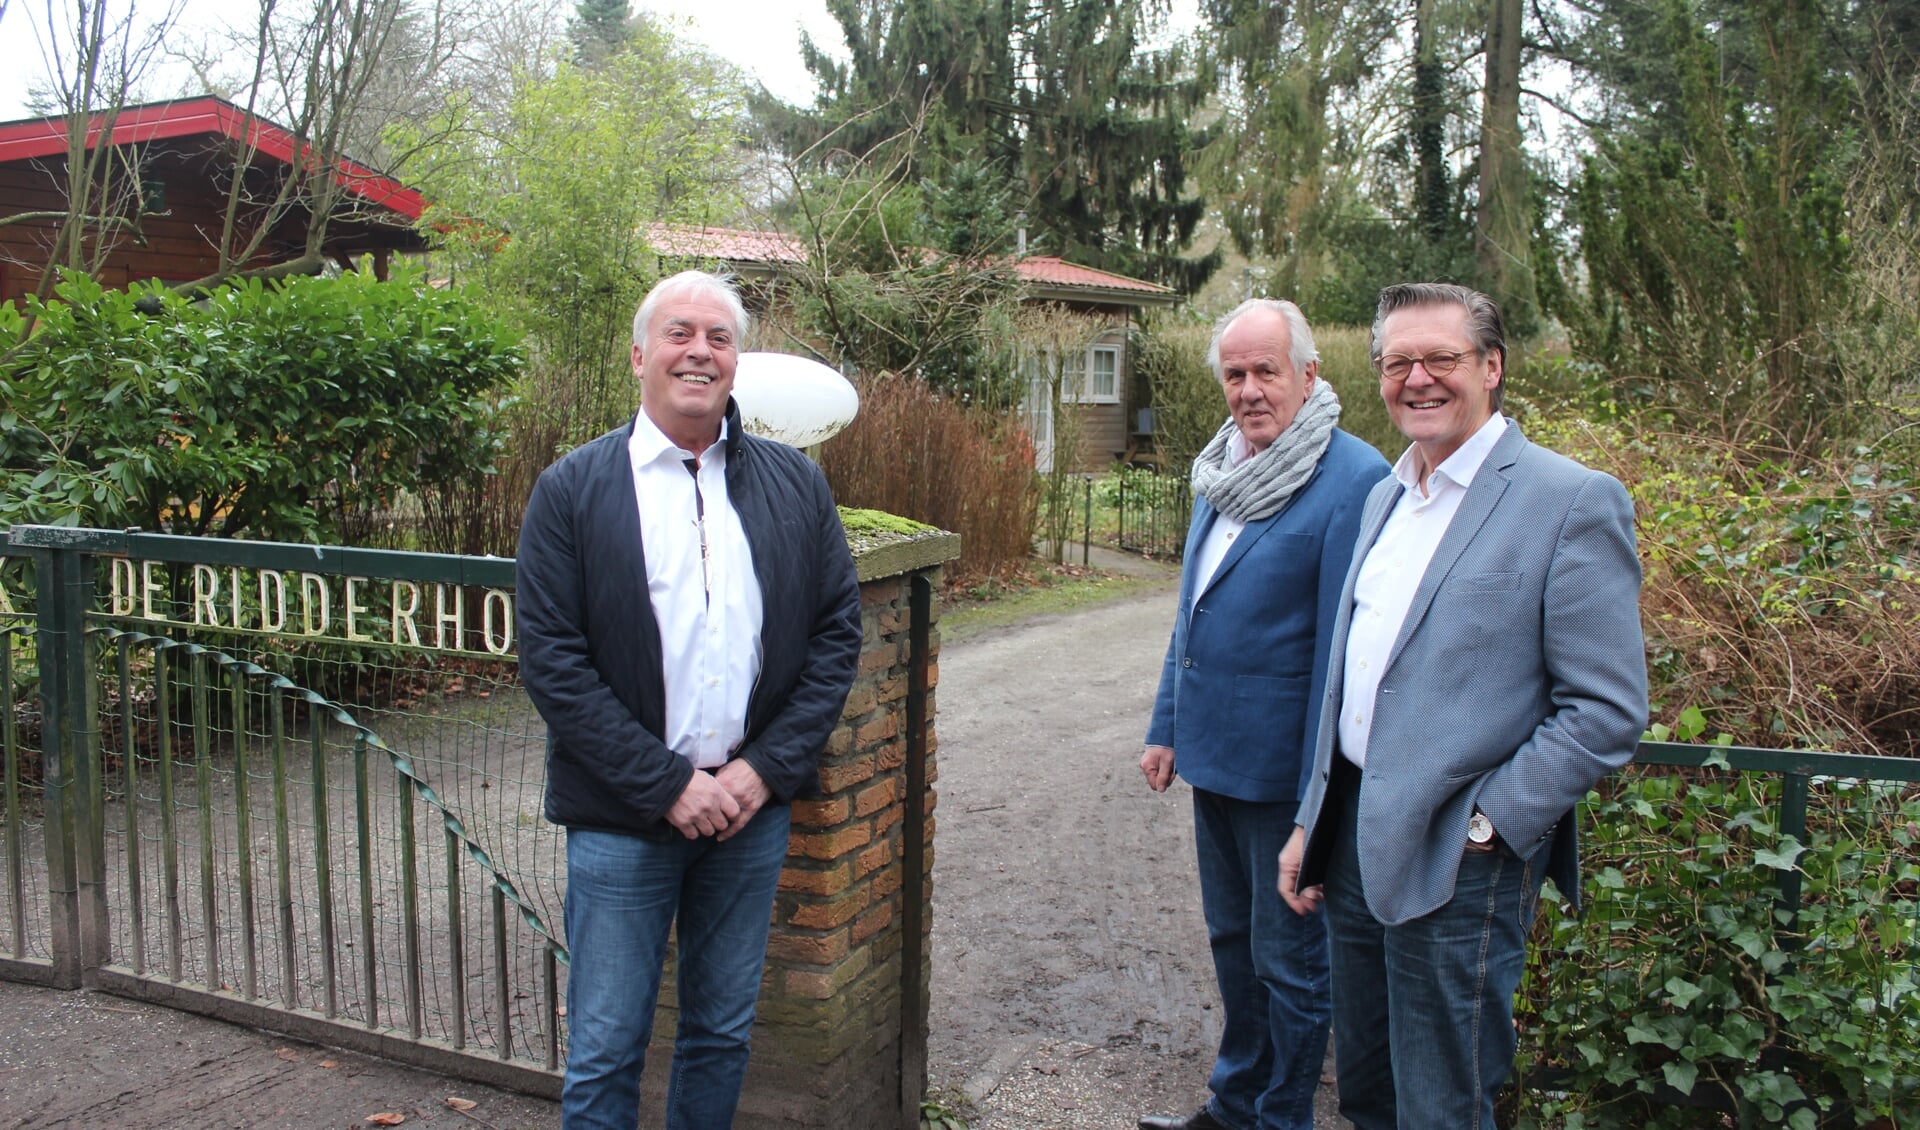  Bewoners (r) en vertegenwoordiger van eigenaar van het recreatiepark De Ridderhof (l) vinden samen de weg naar de toekomst.